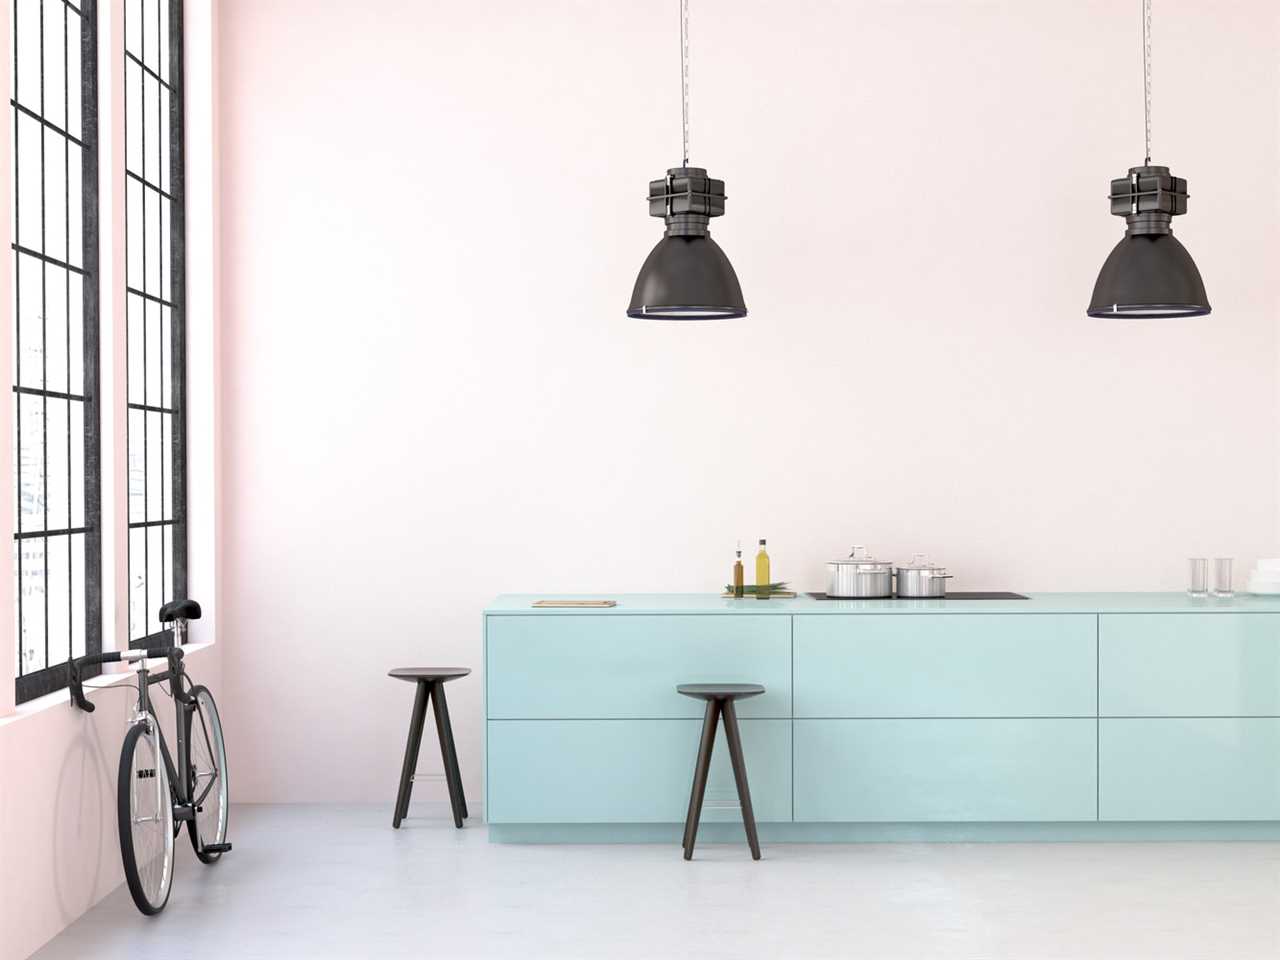 kitchen cabinet design || kitchen design ideas 2023 || modular kitchen designs || kitchen design